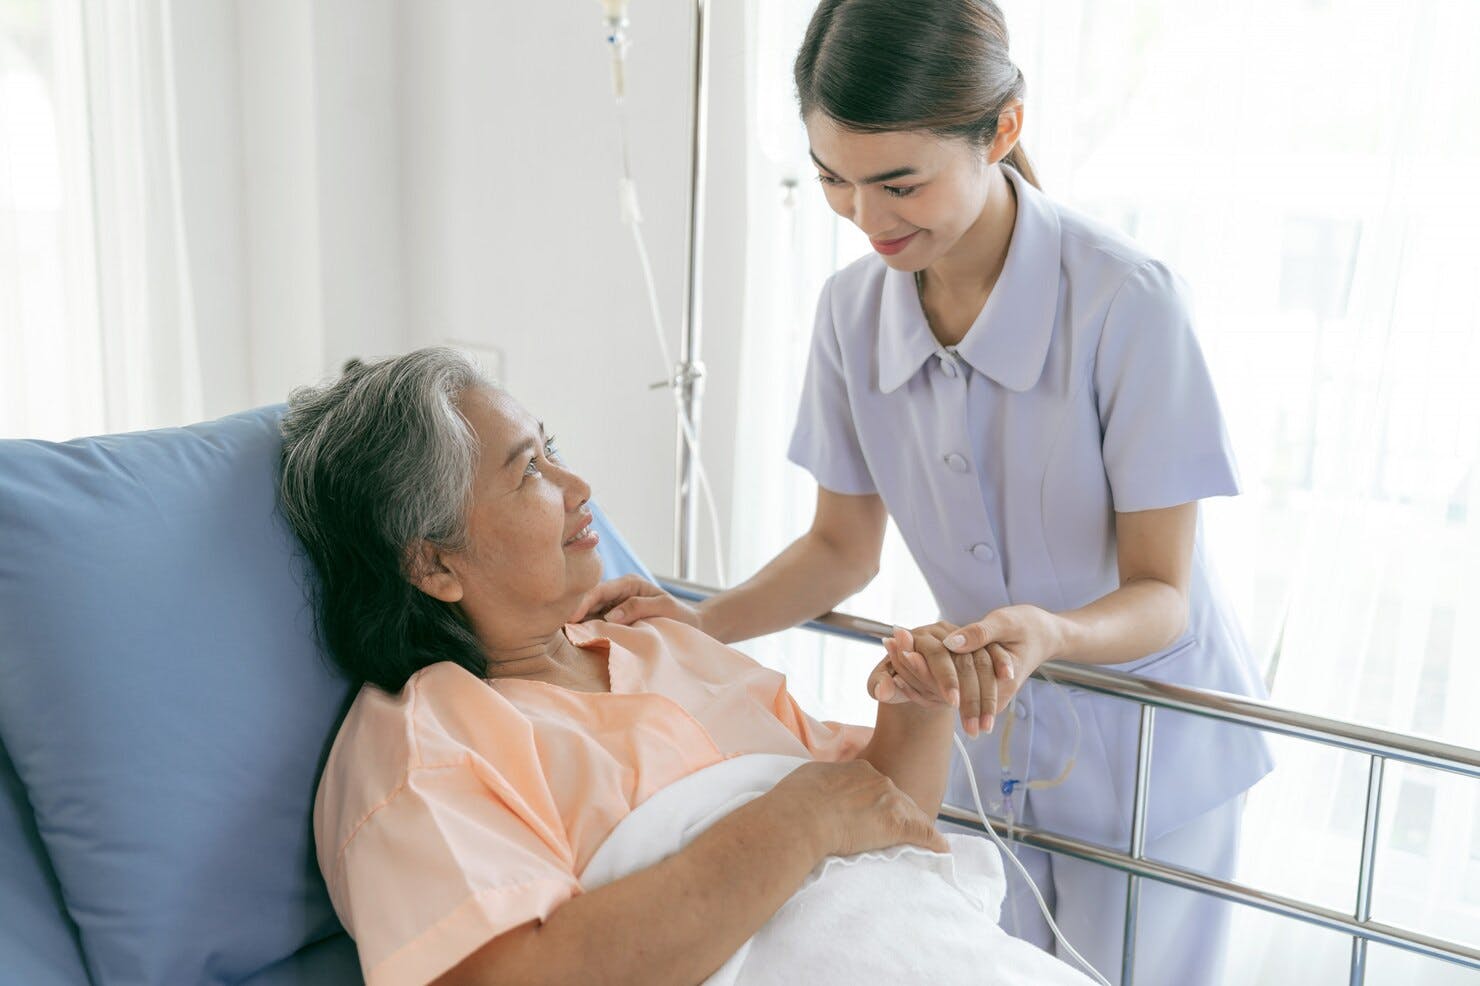 相片來源： <a href="https://www.freepik.com/free-photo/doctors-hold-hands-encourage-elderly-senior-woman-patients-hospital-senior-female-medical-healthcare-concept_7810034.htm#query=filipino%20domestic%20helper%20elderly&position=32&from_view=search&track=ais&uuid=576f190f-cb29-4ec7-a4e9-1b84a51f75a5">Image by jcomp</a> on Freepik